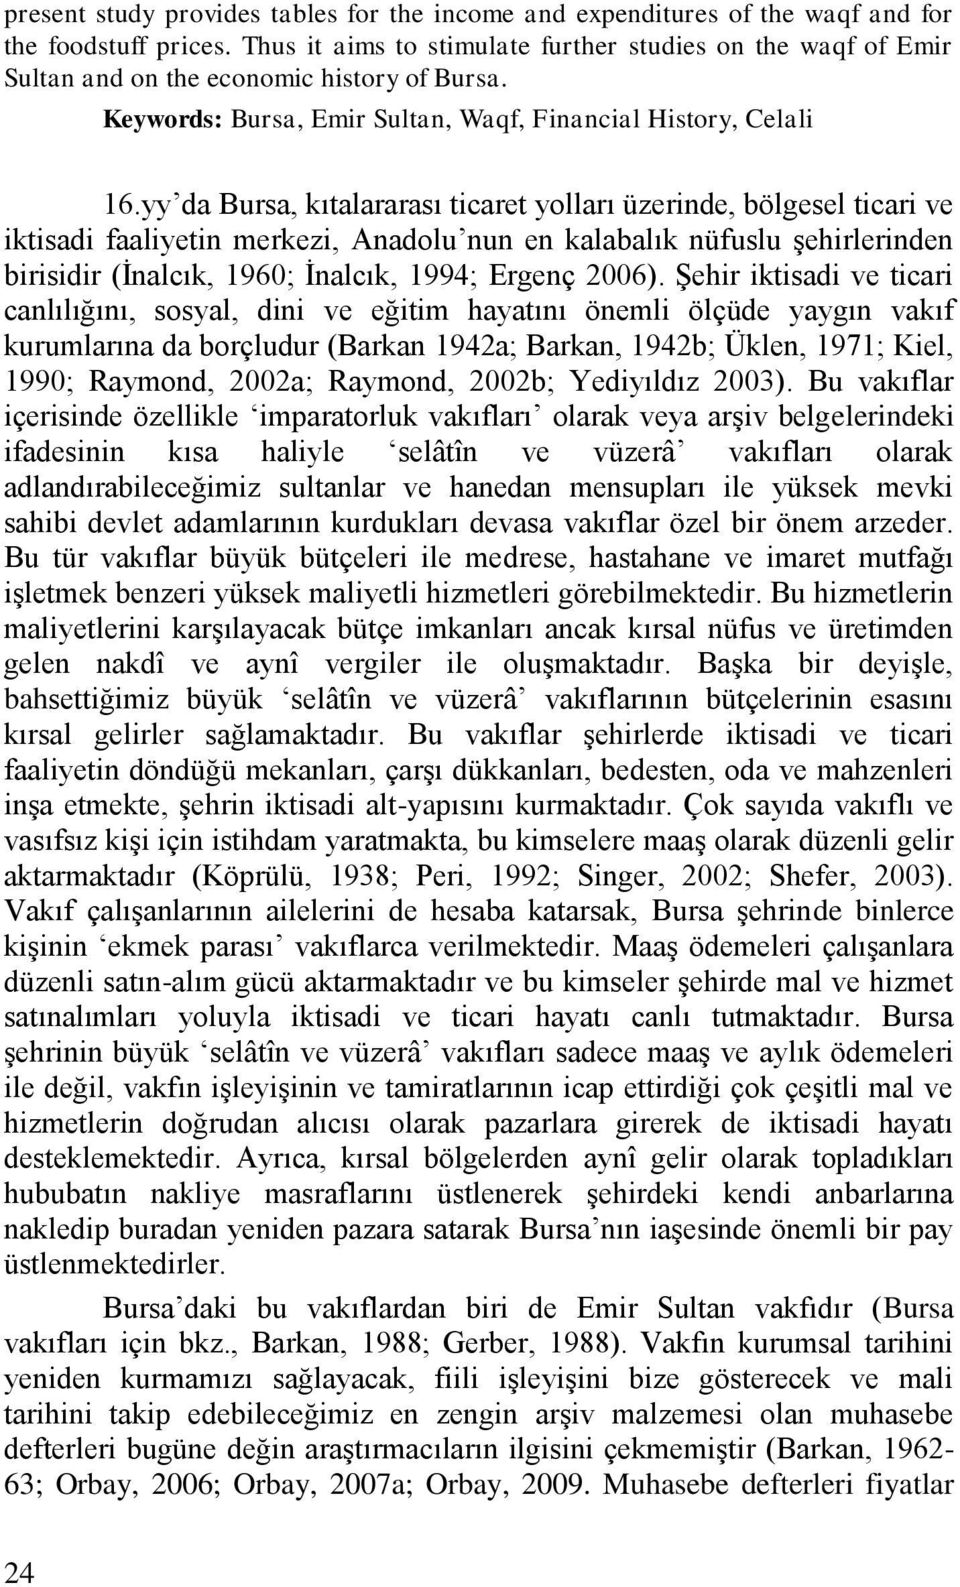 yy da Bursa, kıtalararası ticaret yolları üzerinde, bölgesel ticari ve iktisadi faaliyetin merkezi, Anadolu nun en kalabalık nüfuslu şehirlerinden birisidir (İnalcık, 1960; İnalcık, 1994; Ergenç